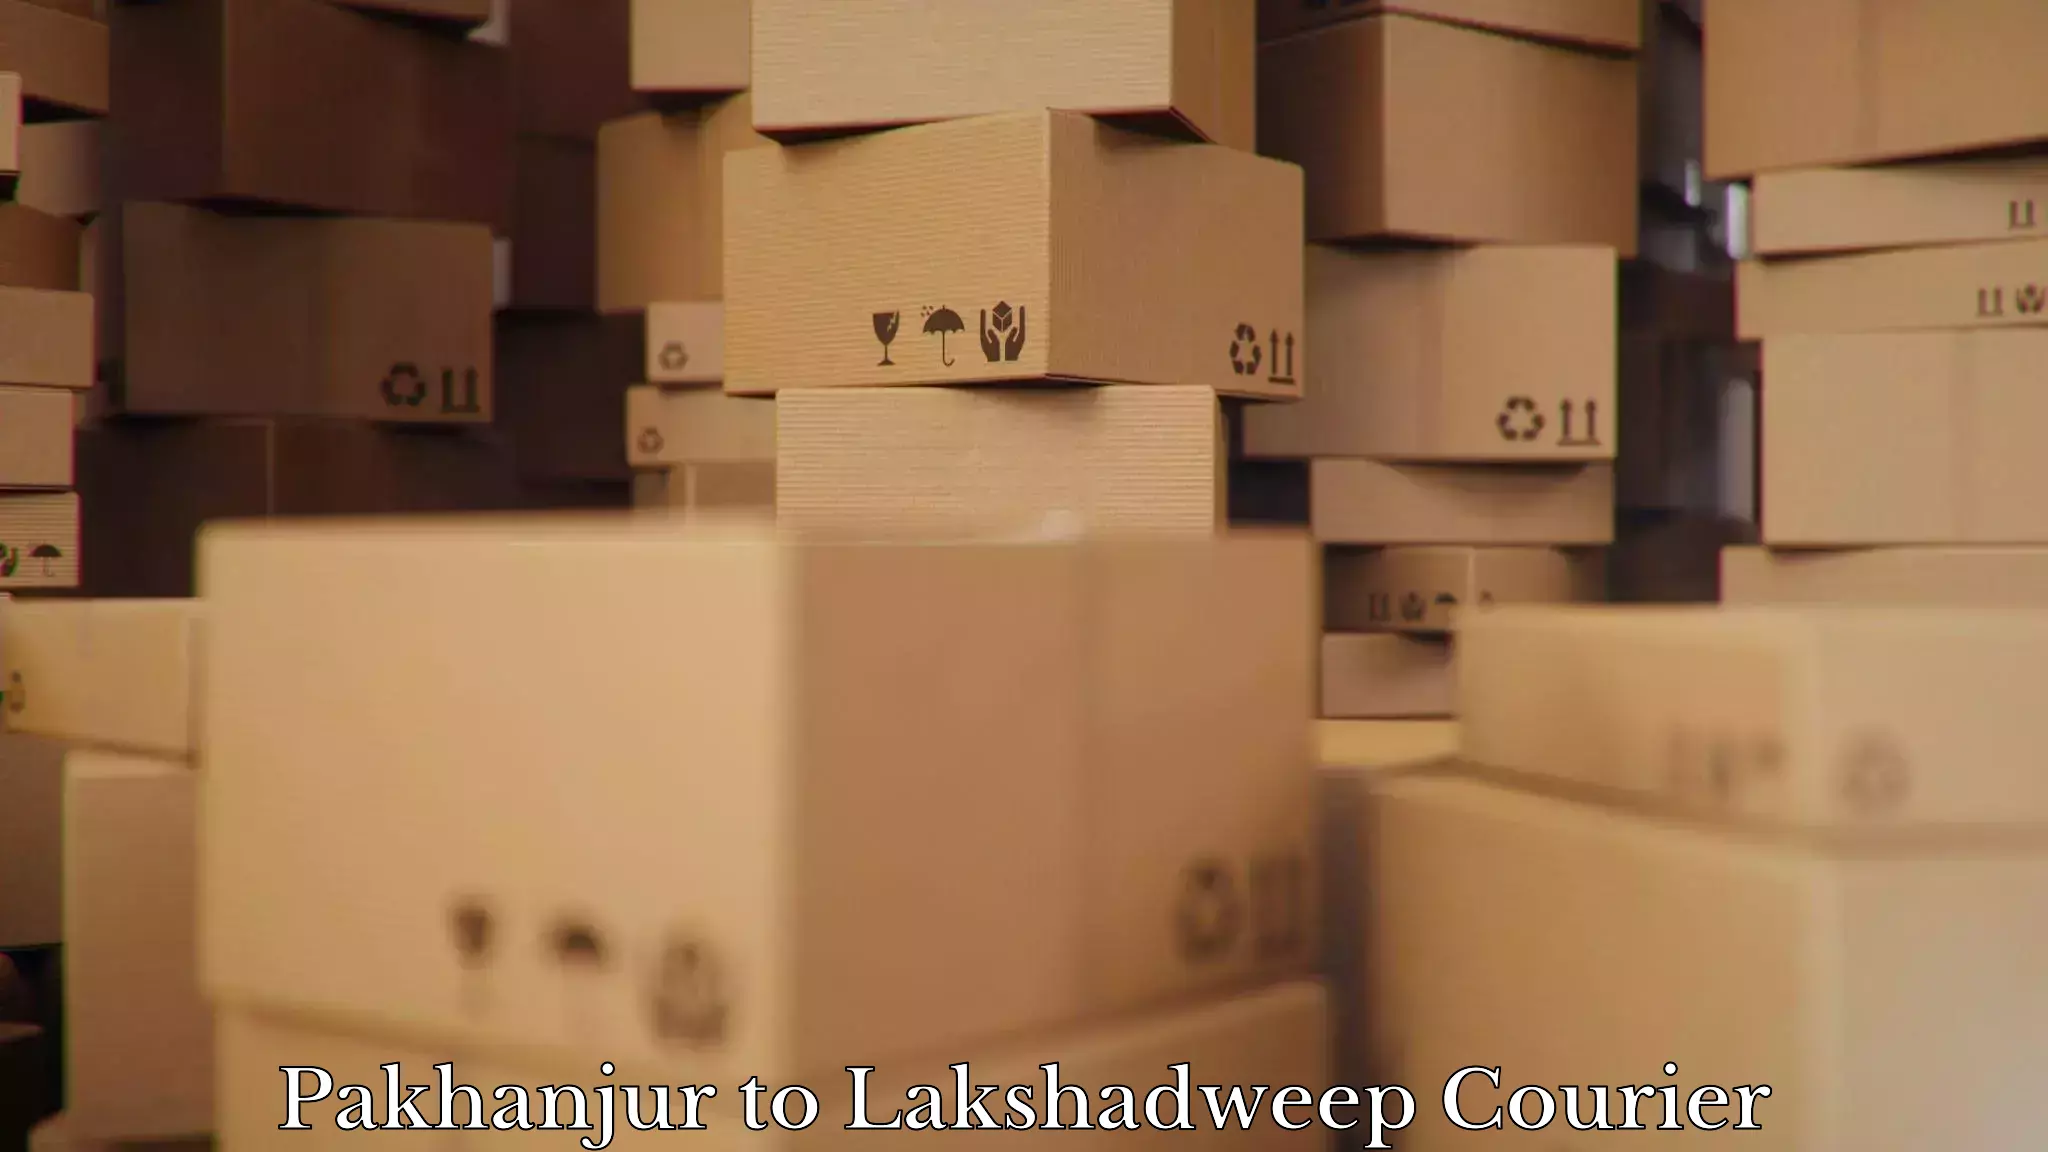 Furniture moving solutions Pakhanjur to Lakshadweep